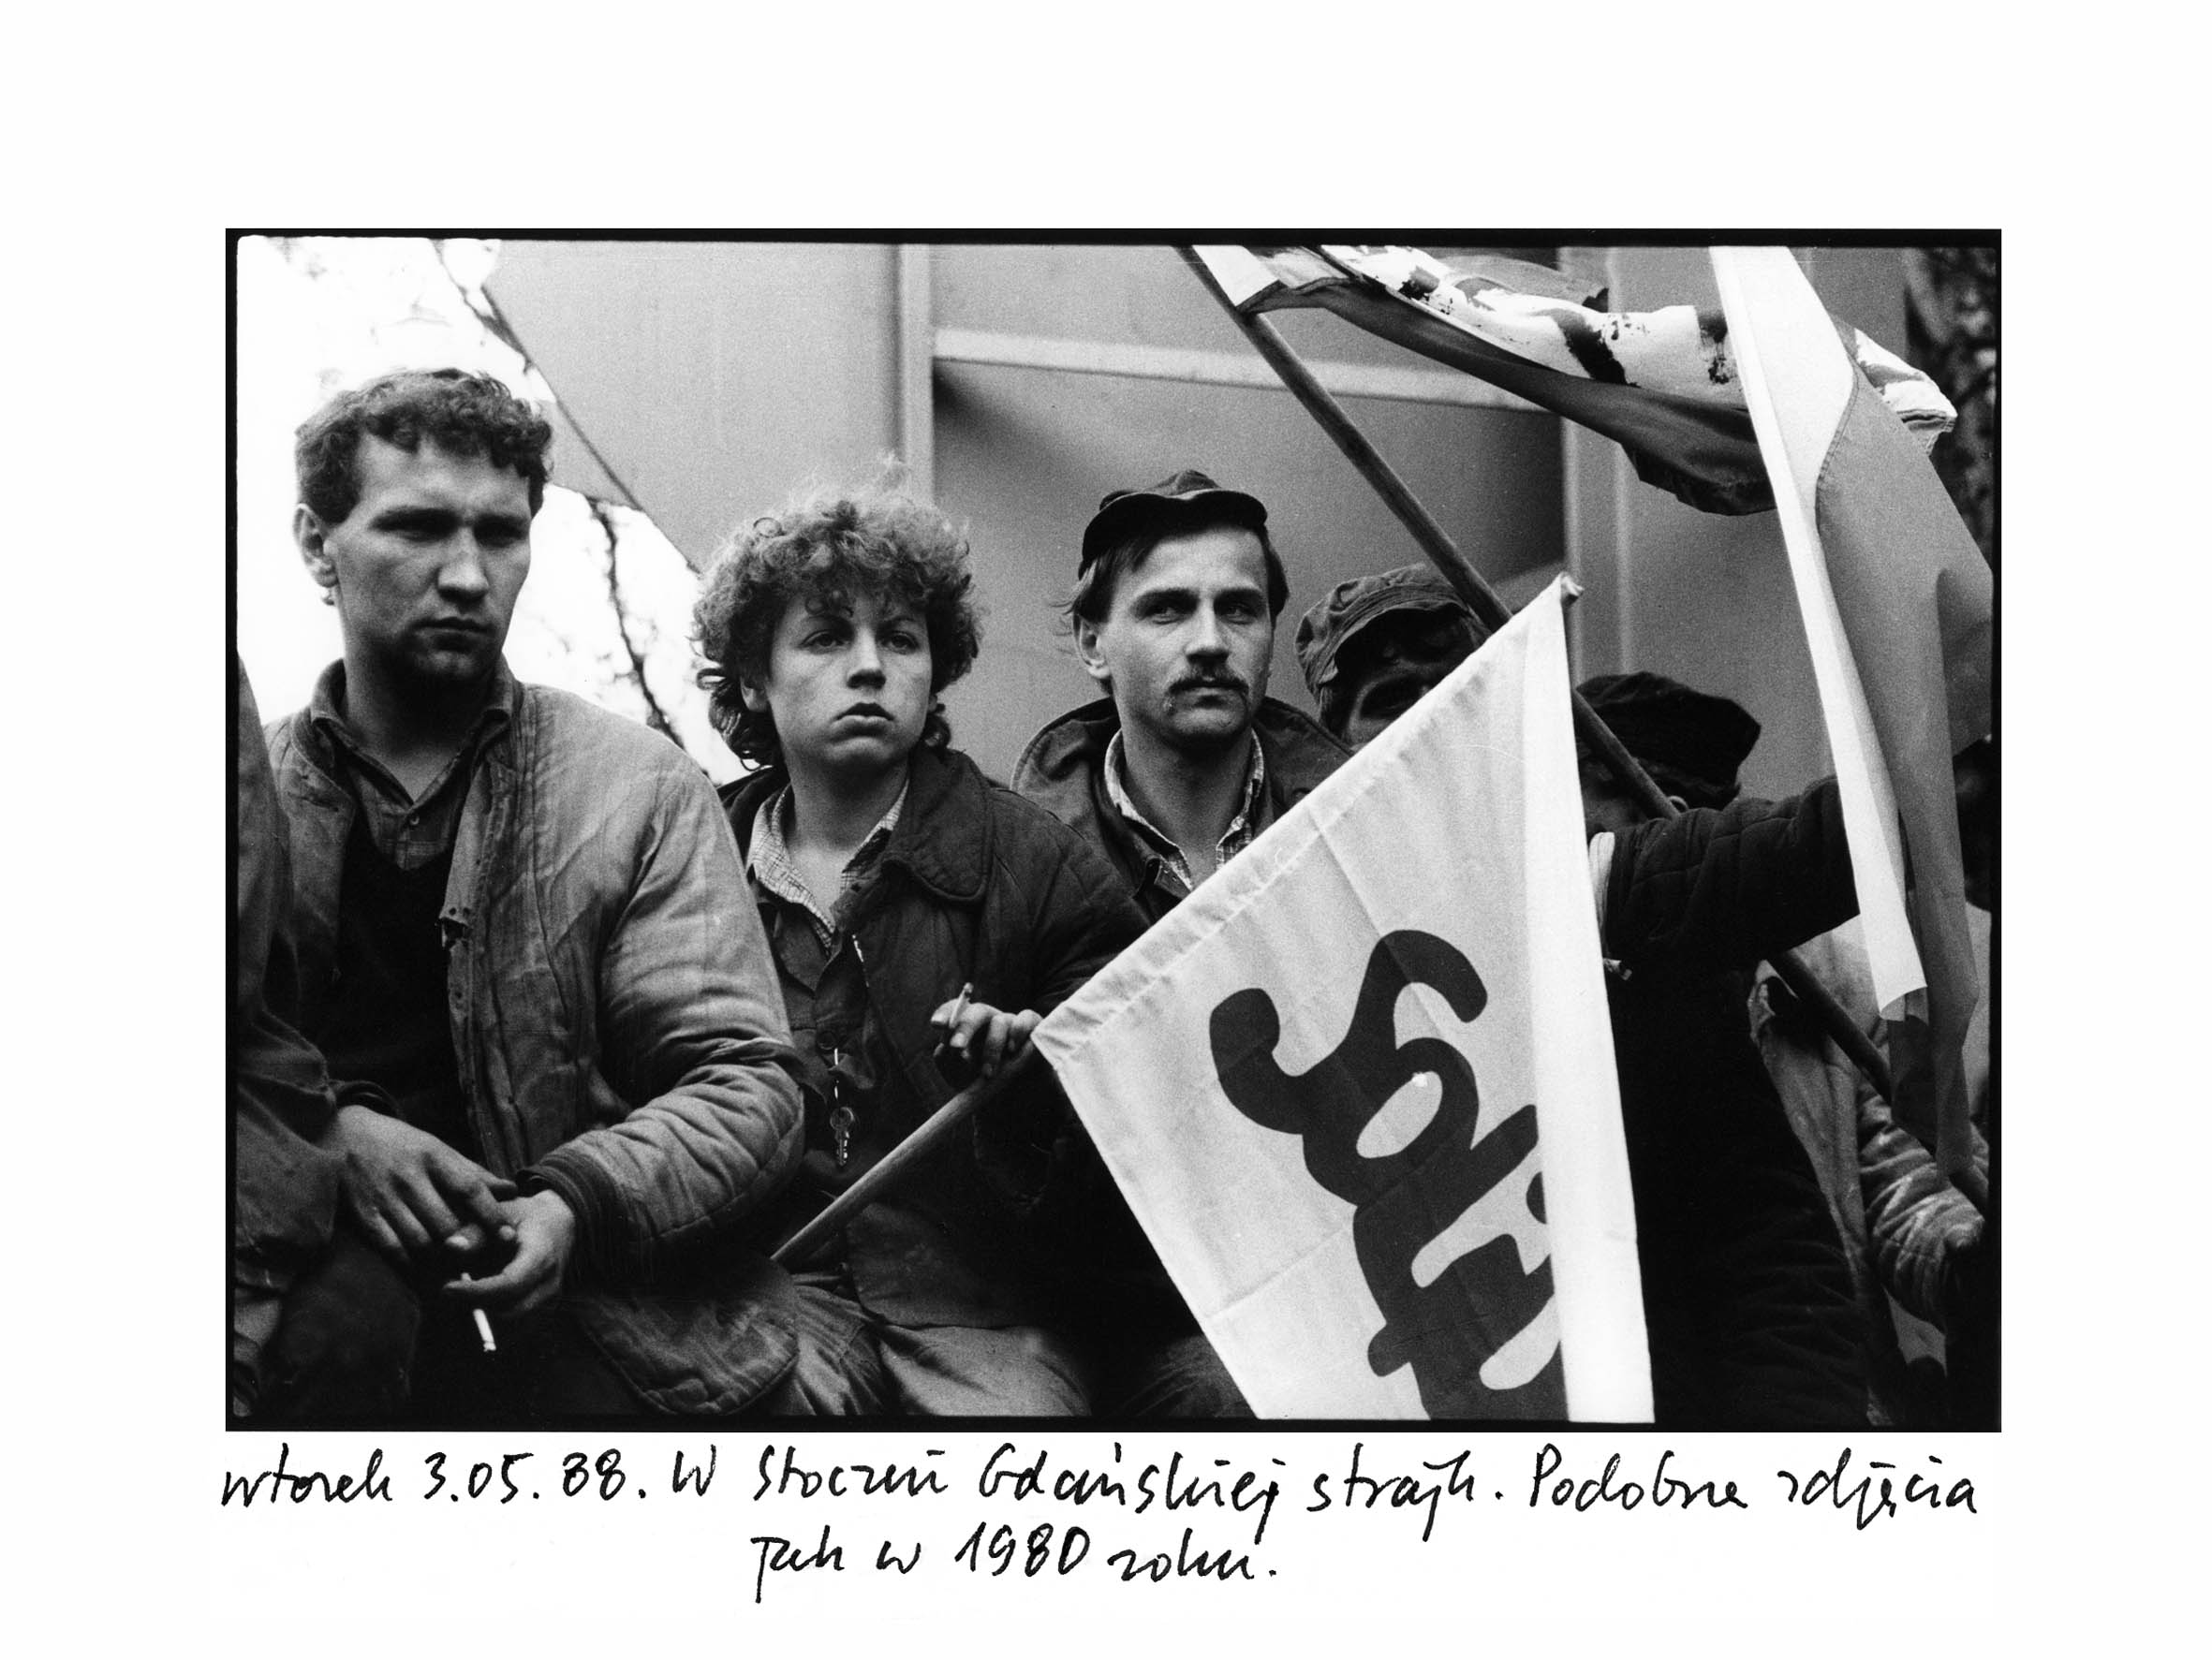 Wtorek 3.05.88. W Stoczni Gadńskiej strajk Podobne
        zdjęcia jak w 1980 roku / Tuesday 3.05.88. Strike in the Gdańsk
        Shipyard Photos similar to those from 1980